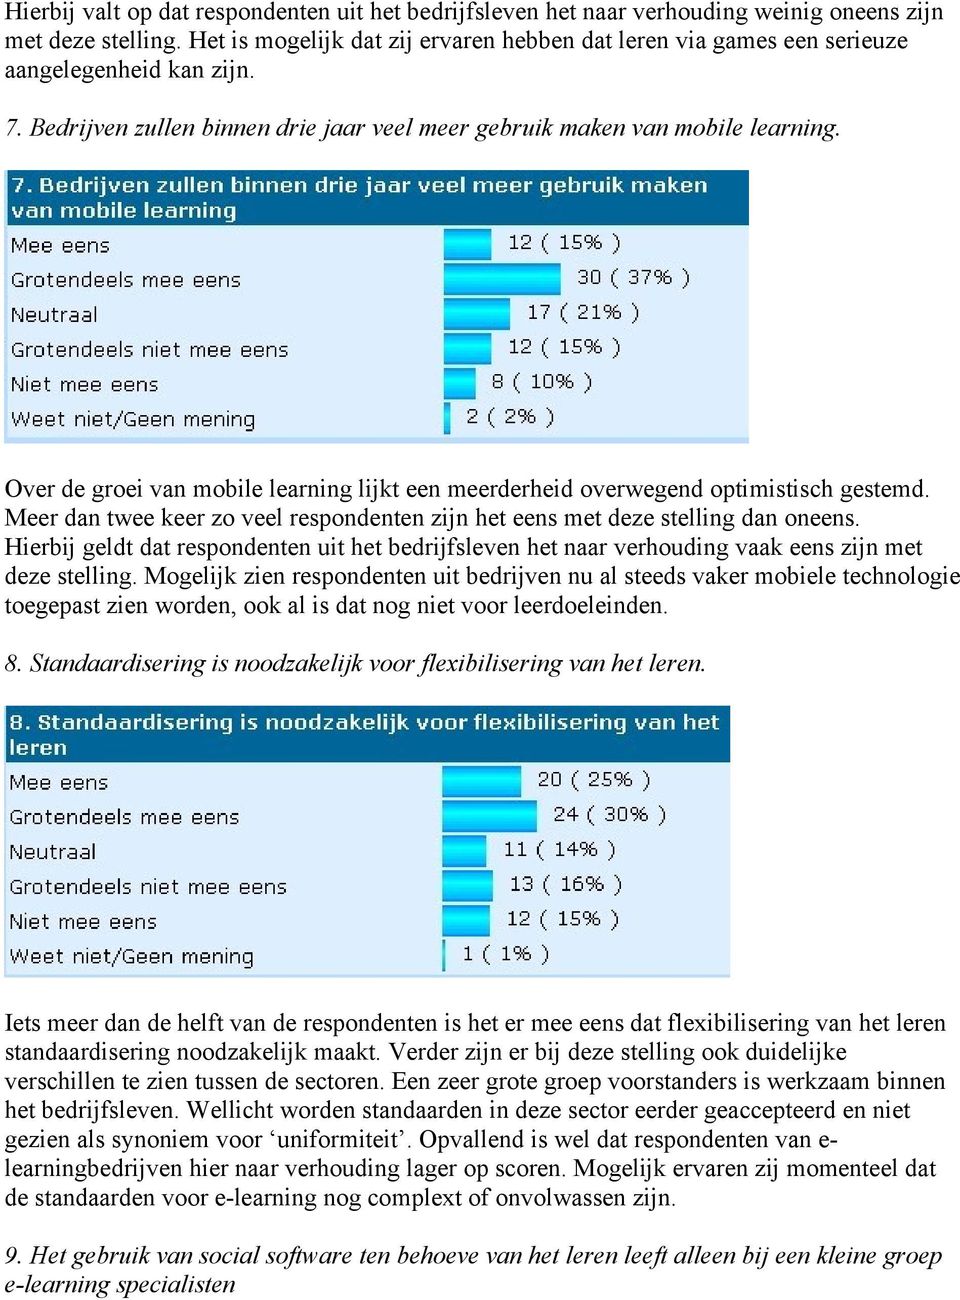 Over de groei van mobile learning lijkt een meerderheid overwegend optimistisch gestemd. Meer dan twee keer zo veel respondenten zijn het eens met deze stelling dan oneens.